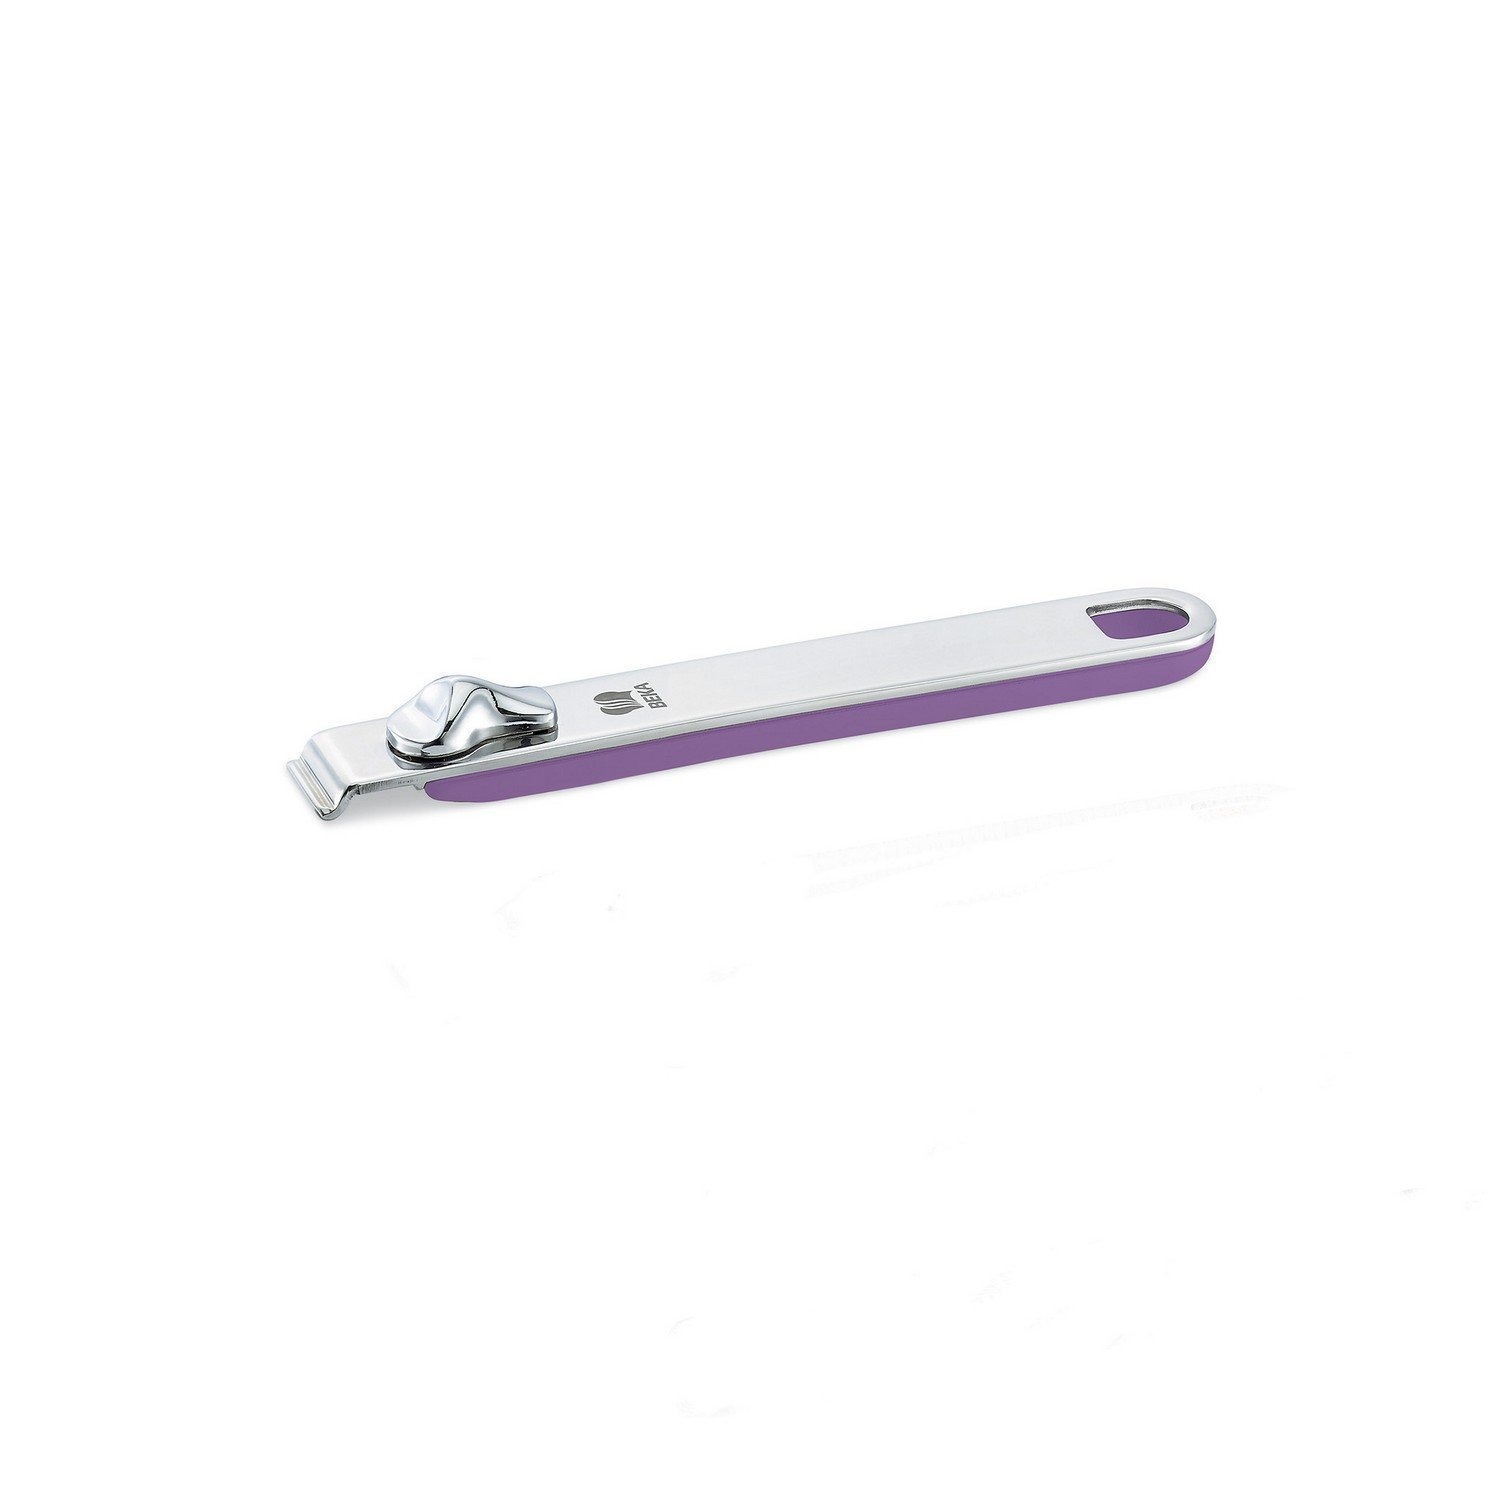 Ручка съемная длинная Beka select фиолетовая 18,5 см пуходерка wood большая без капель 12 х 19 см длинная деревянная ручка